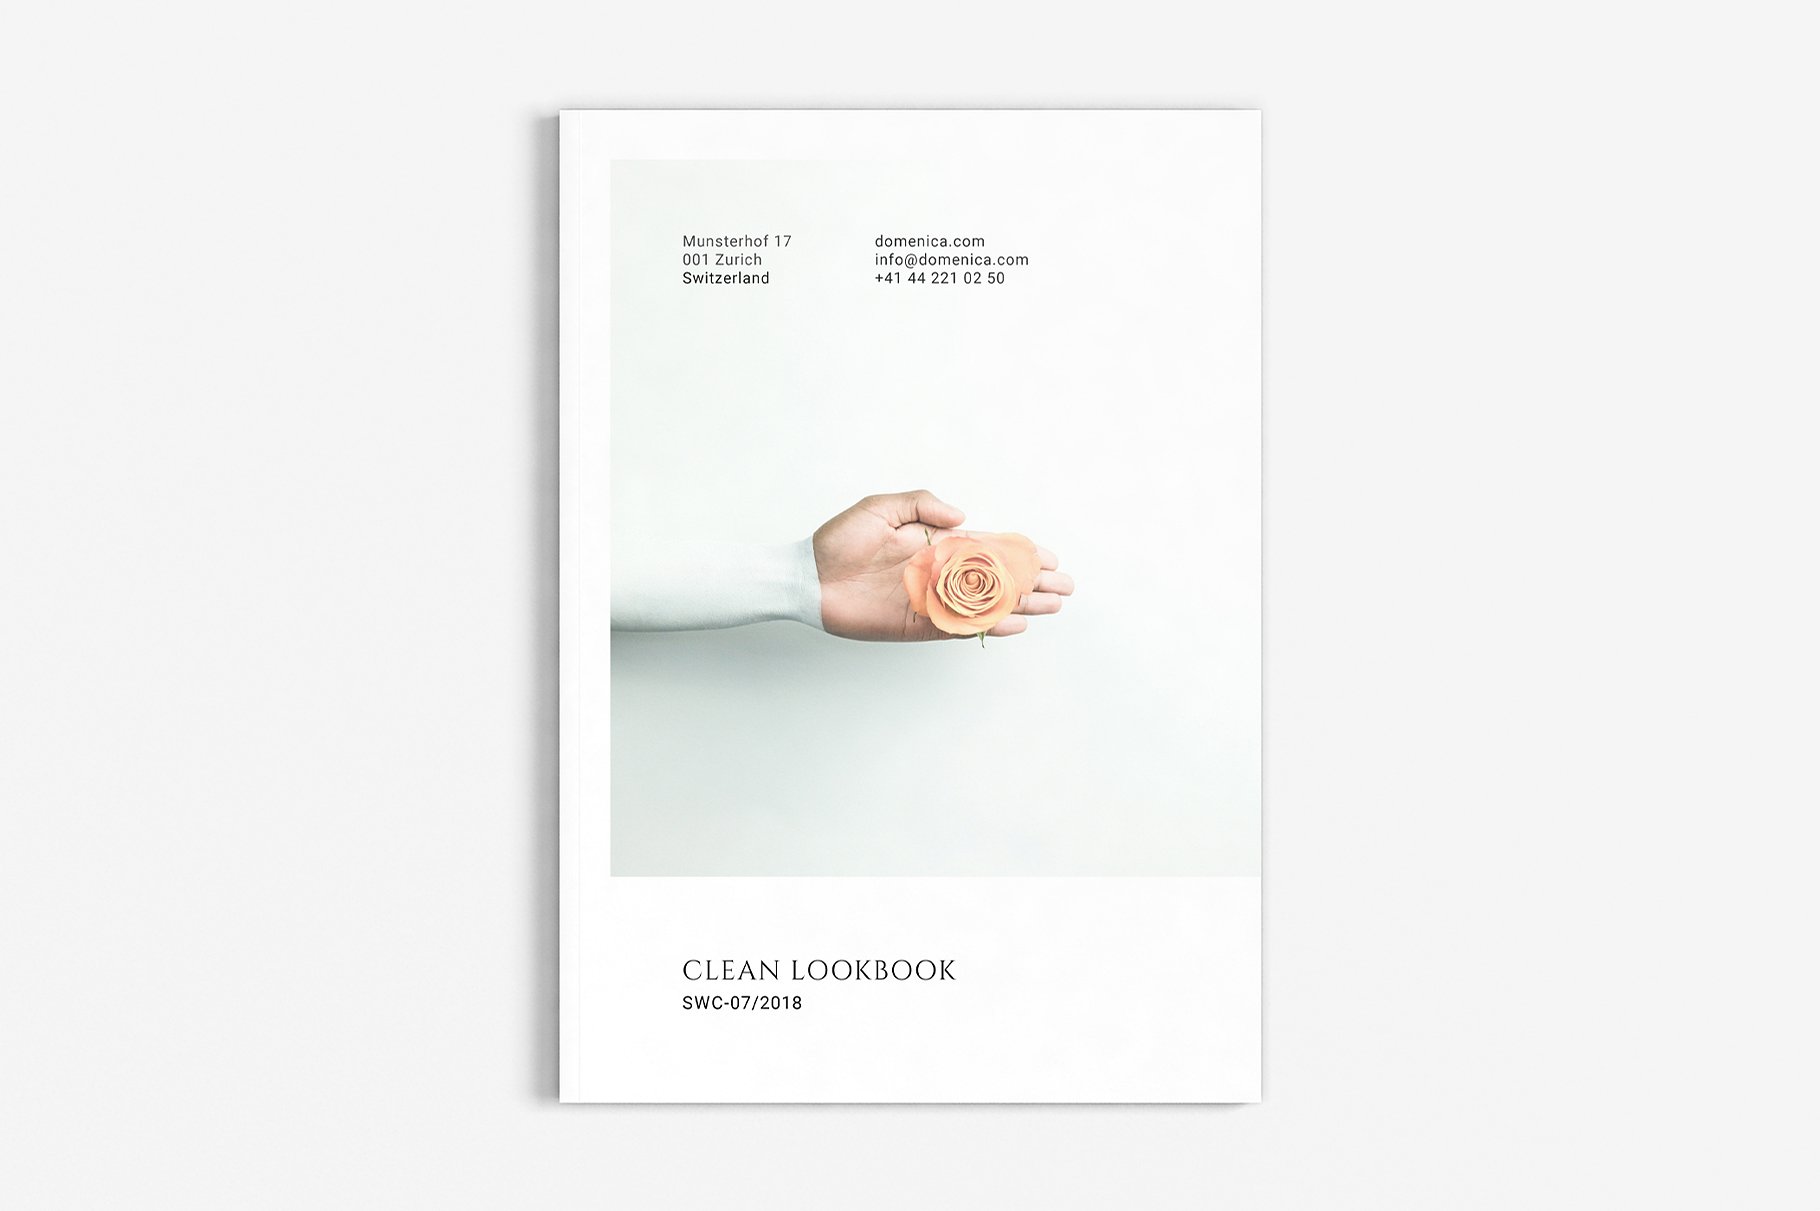 Clean Lookbook